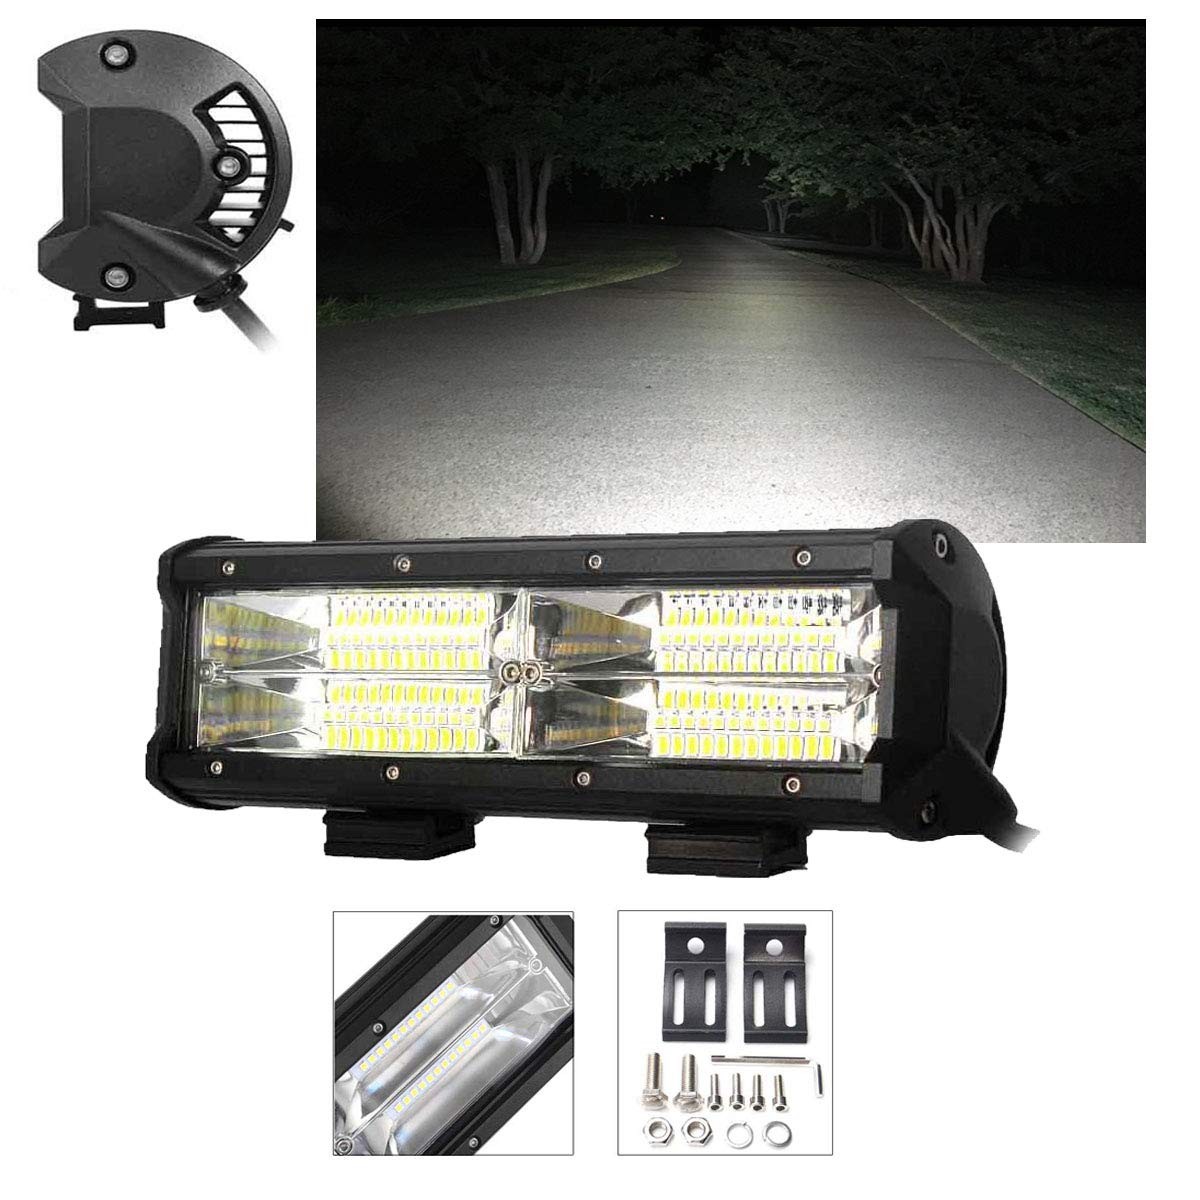 144W LED Light Bar Flood/Spot Led Fog lights 14400lms 6000K Off Road Vehicle Lighting For Jeeps, 4x4